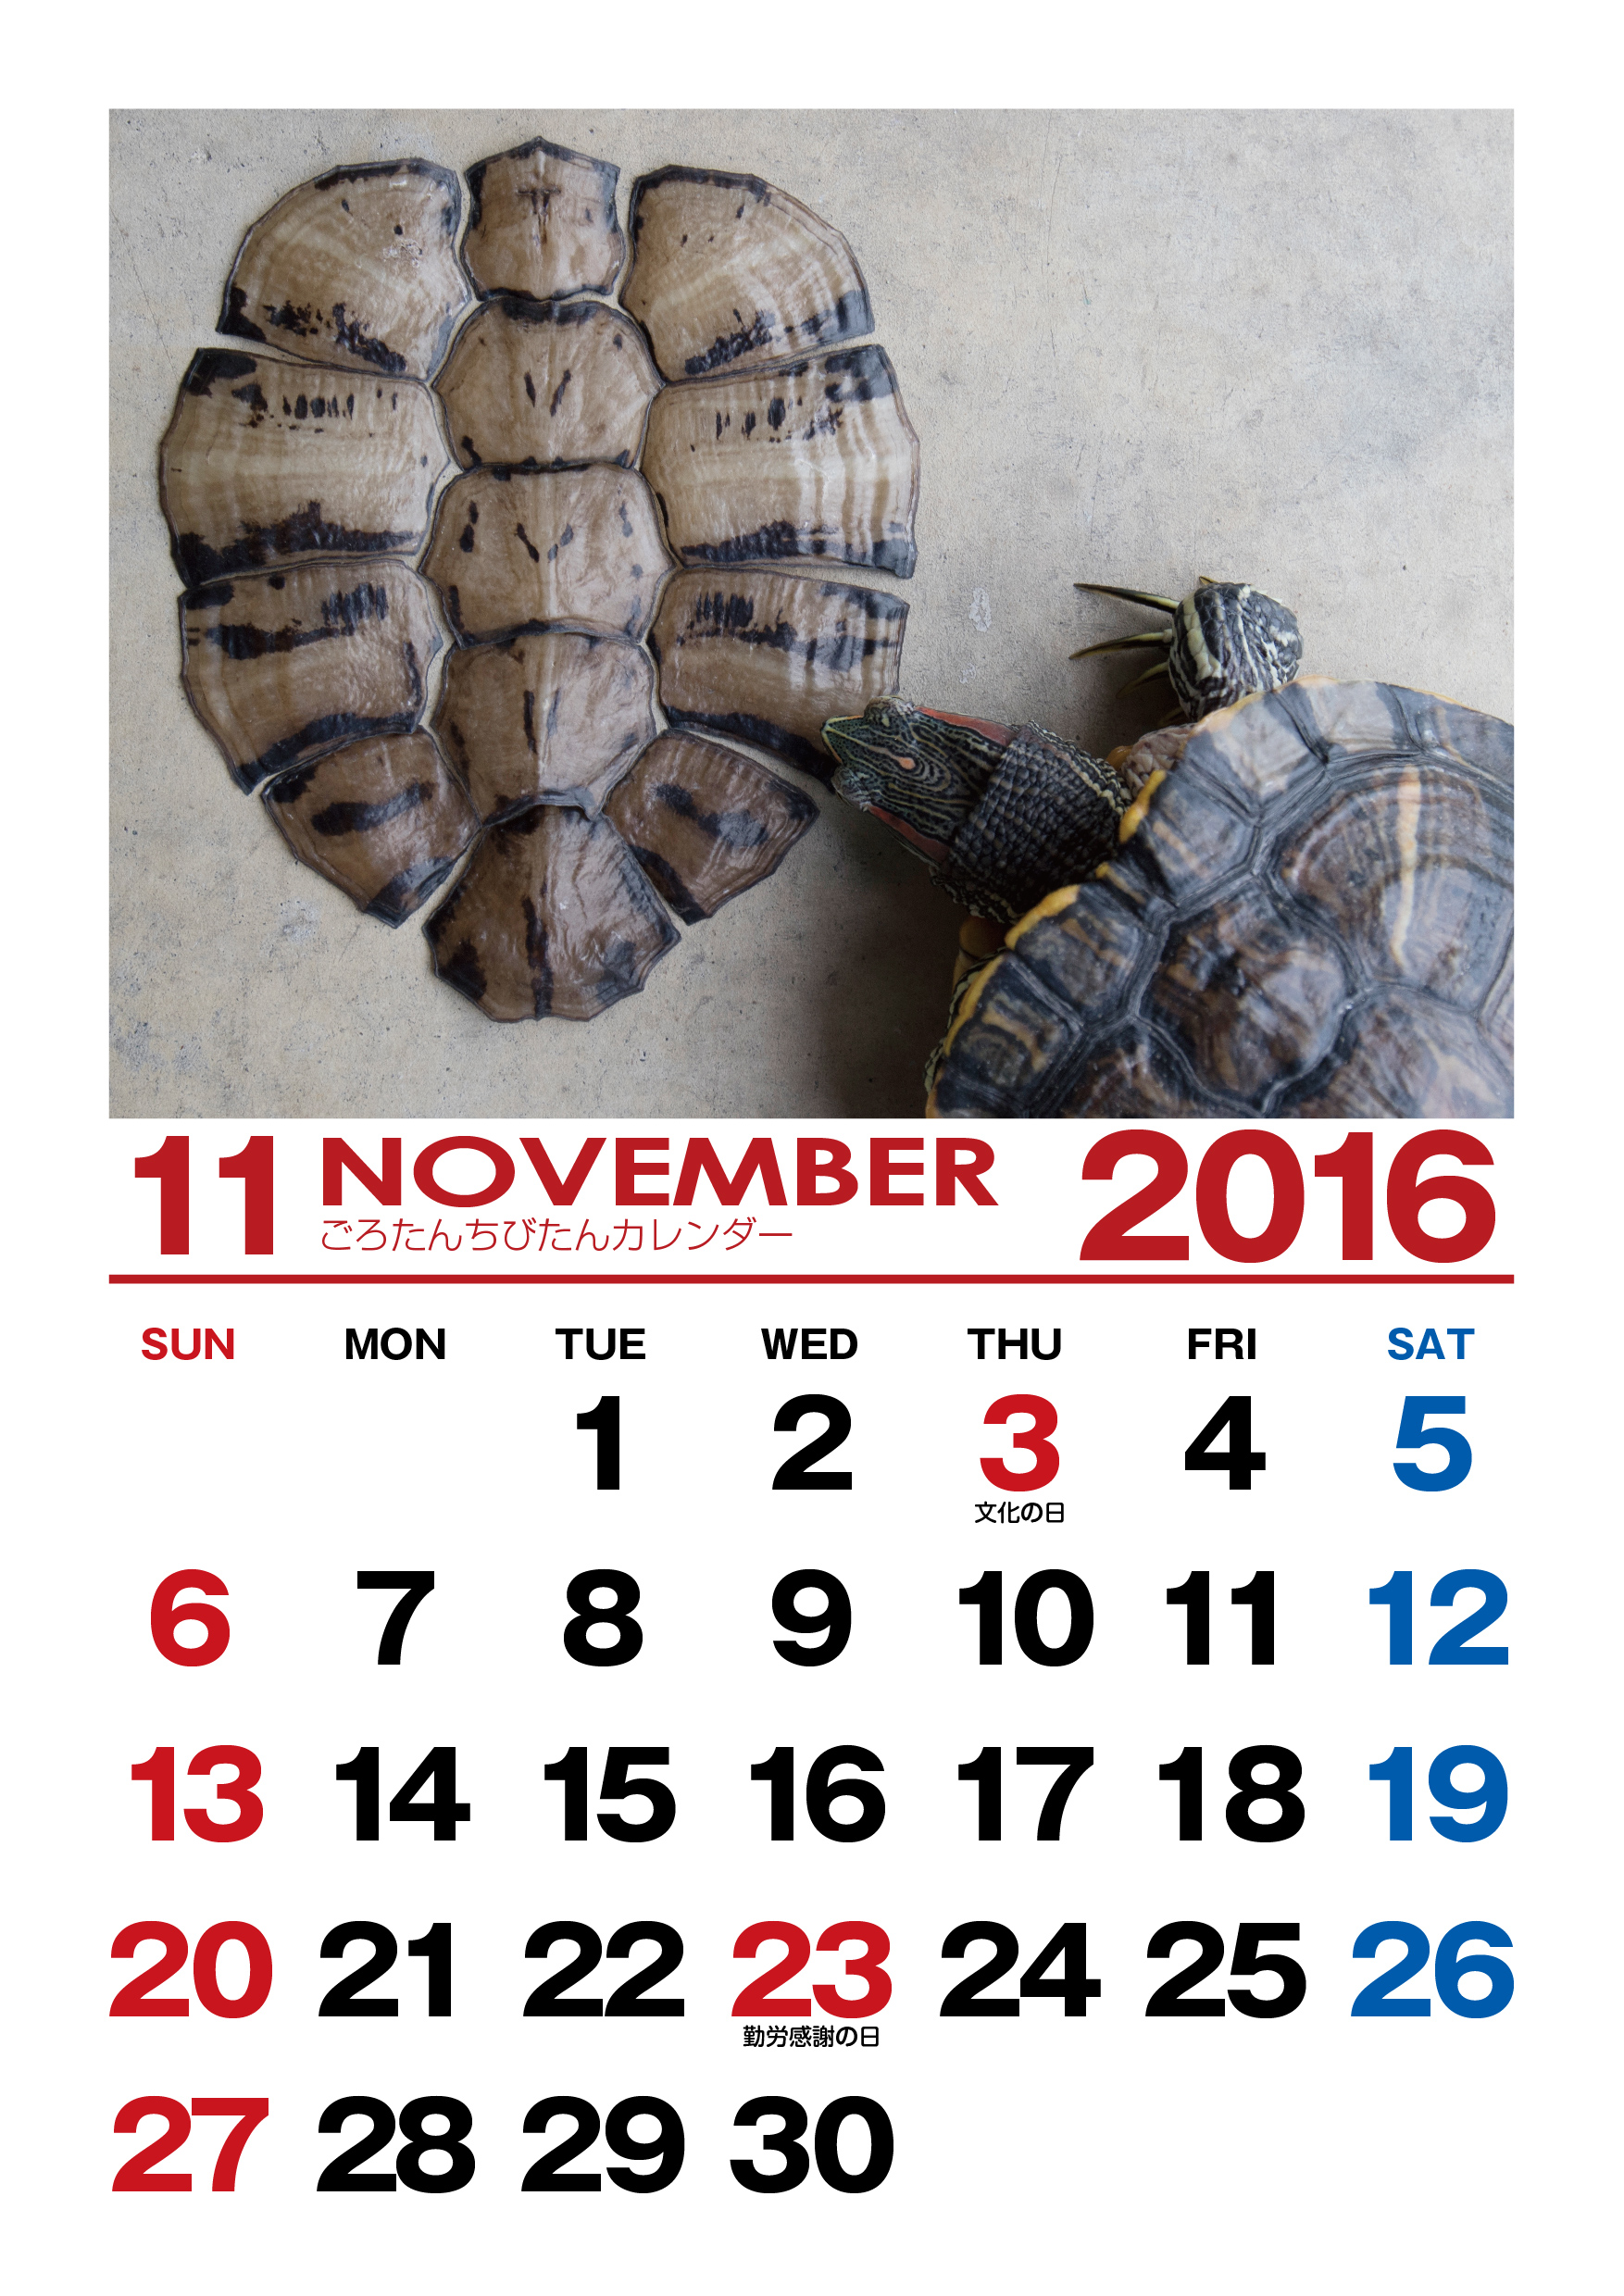 ごろたんずカレンダー Turtle56tan Com Part 3